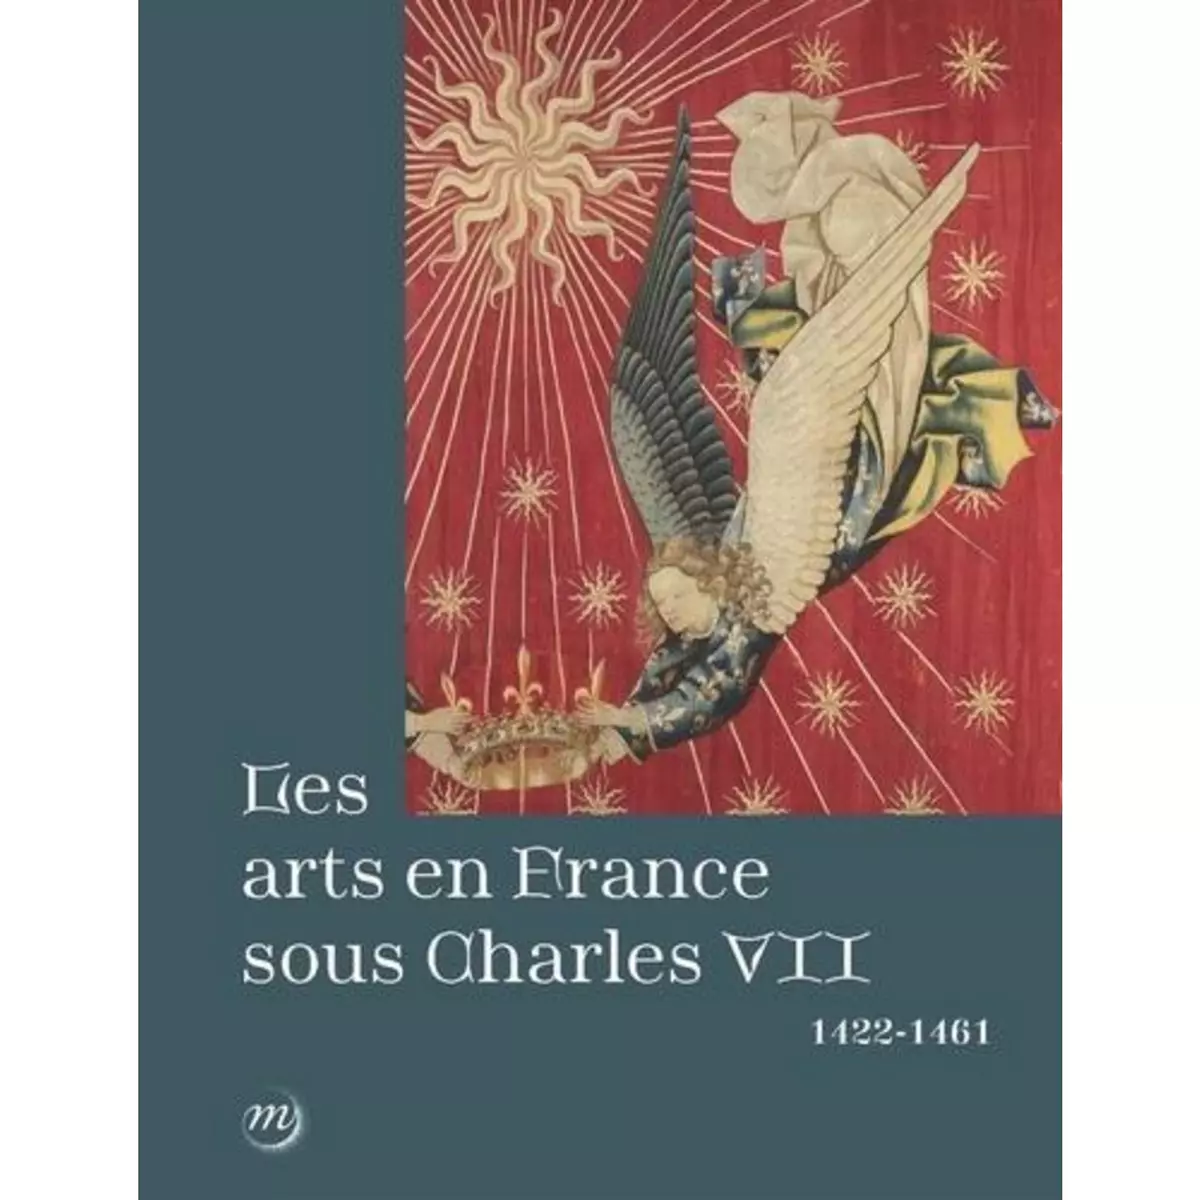  LES ARTS EN FRANCE SOUS CHARLES VII (1422-1461), Deldicque Mathieu